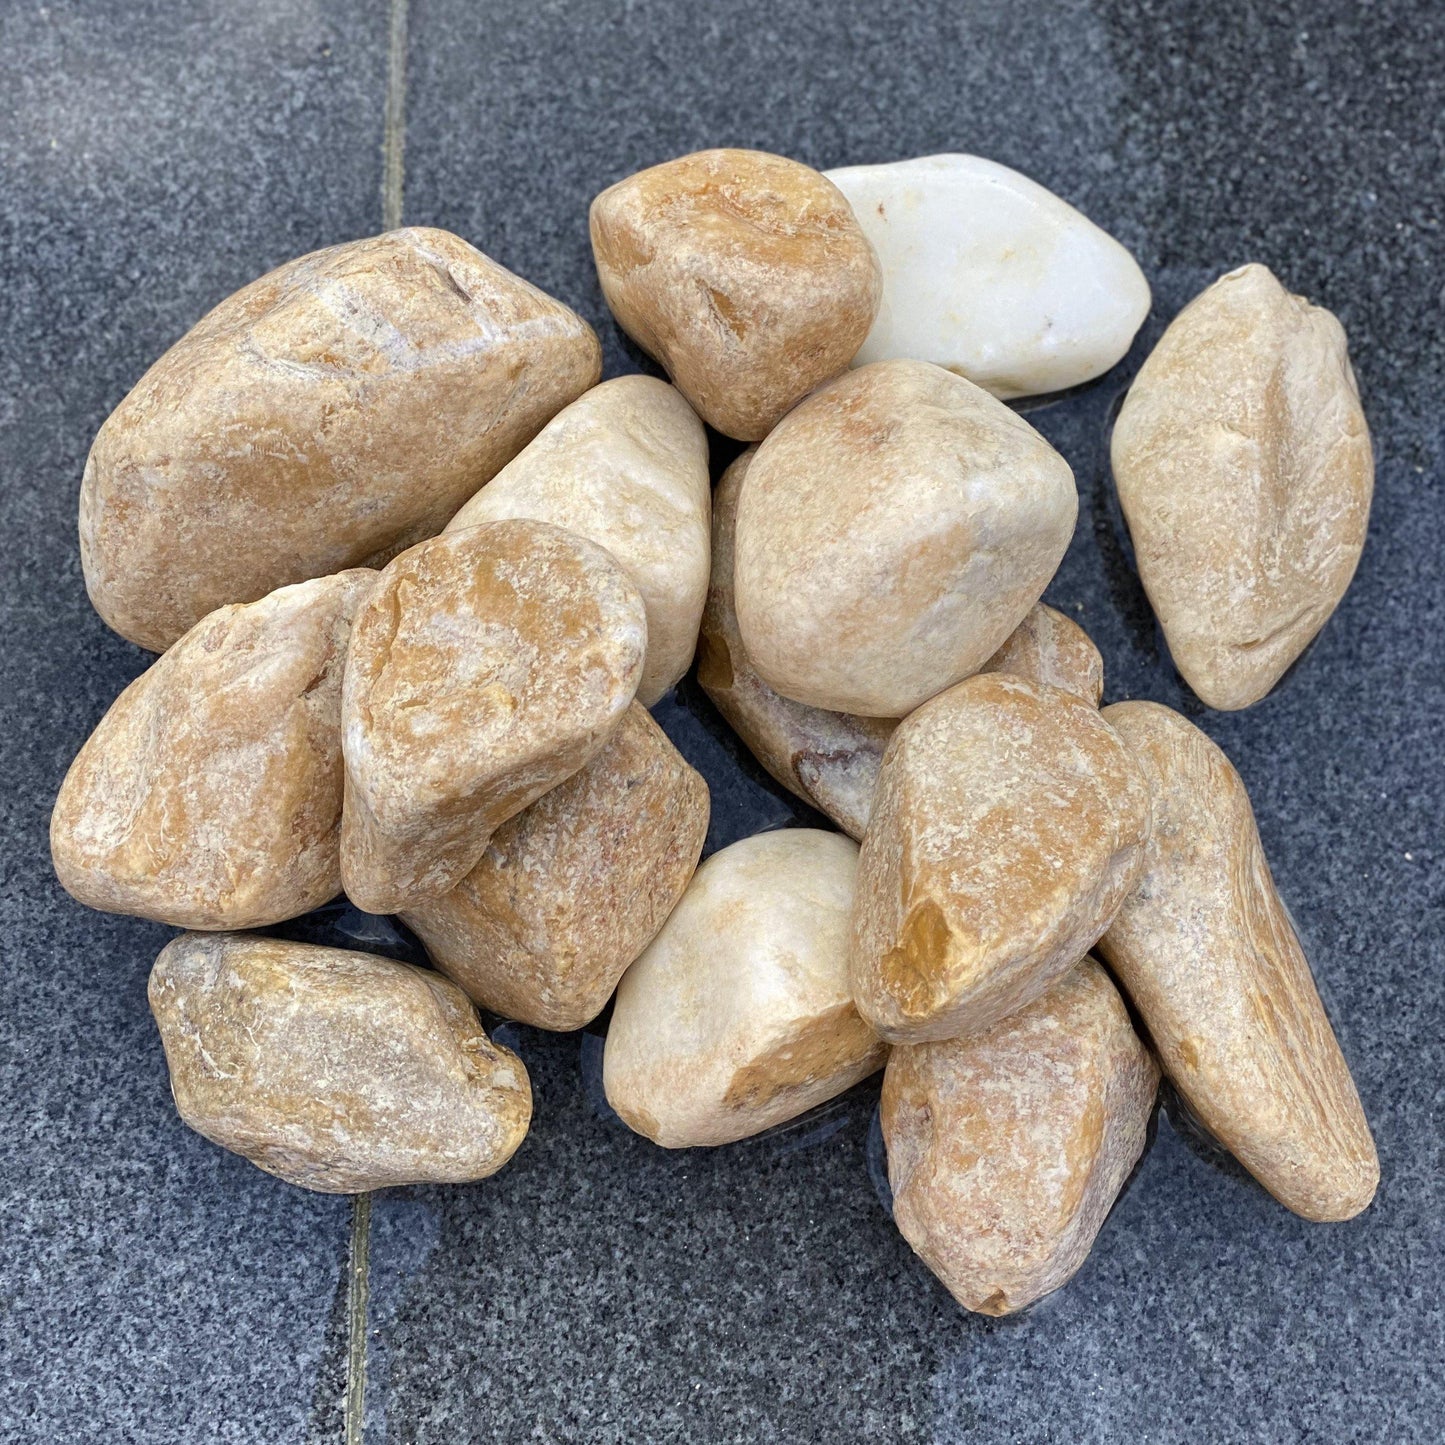 Giallo Siena Pebbles-Pebble-Stones4Gardens-stones4gardens